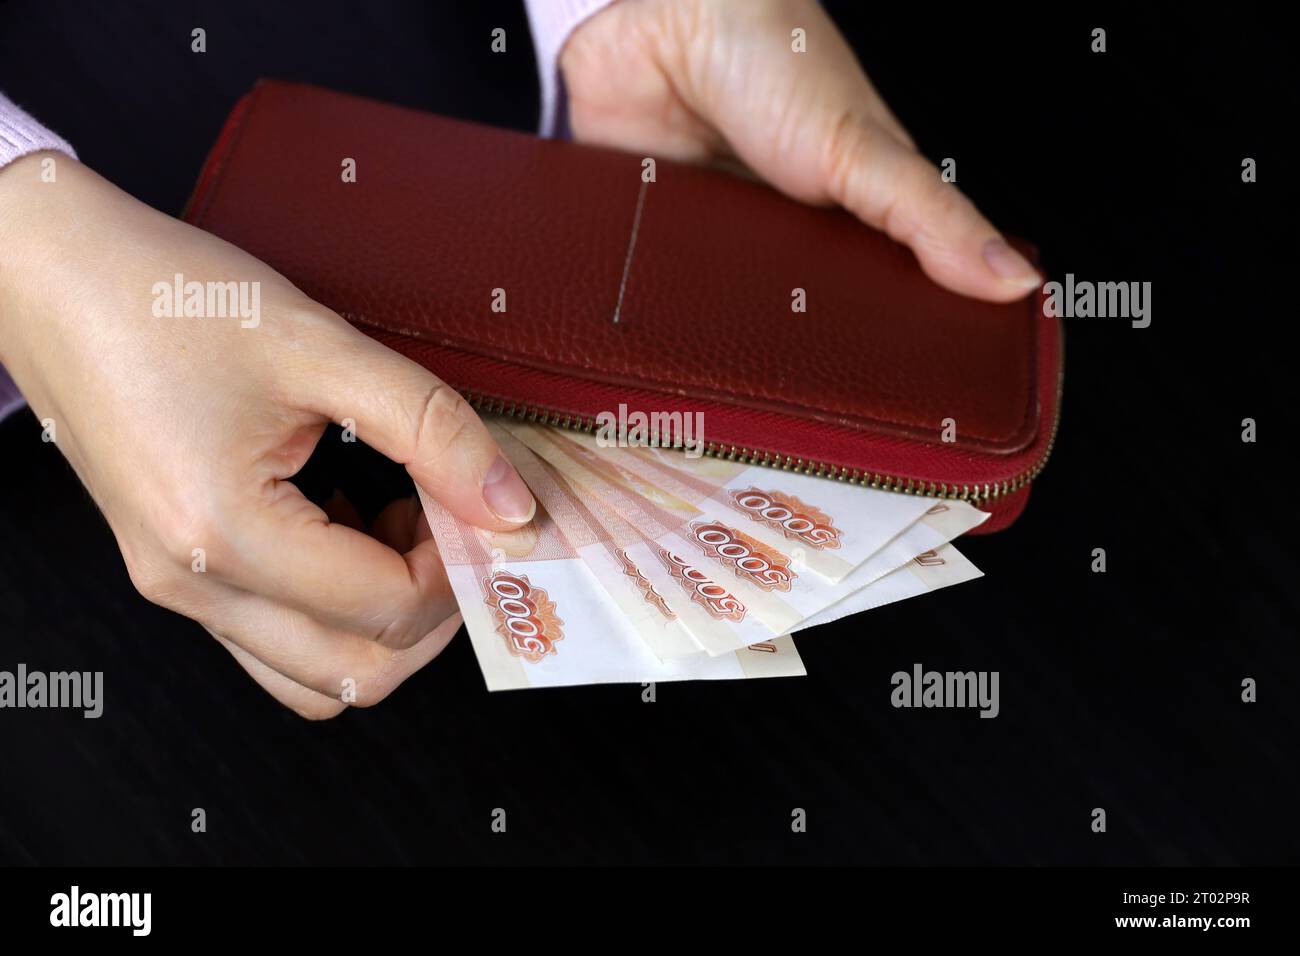 La donna prende i rubli russi dal portafoglio rosso. Concetto di salari in Russia, pagamenti, assistenza Foto Stock